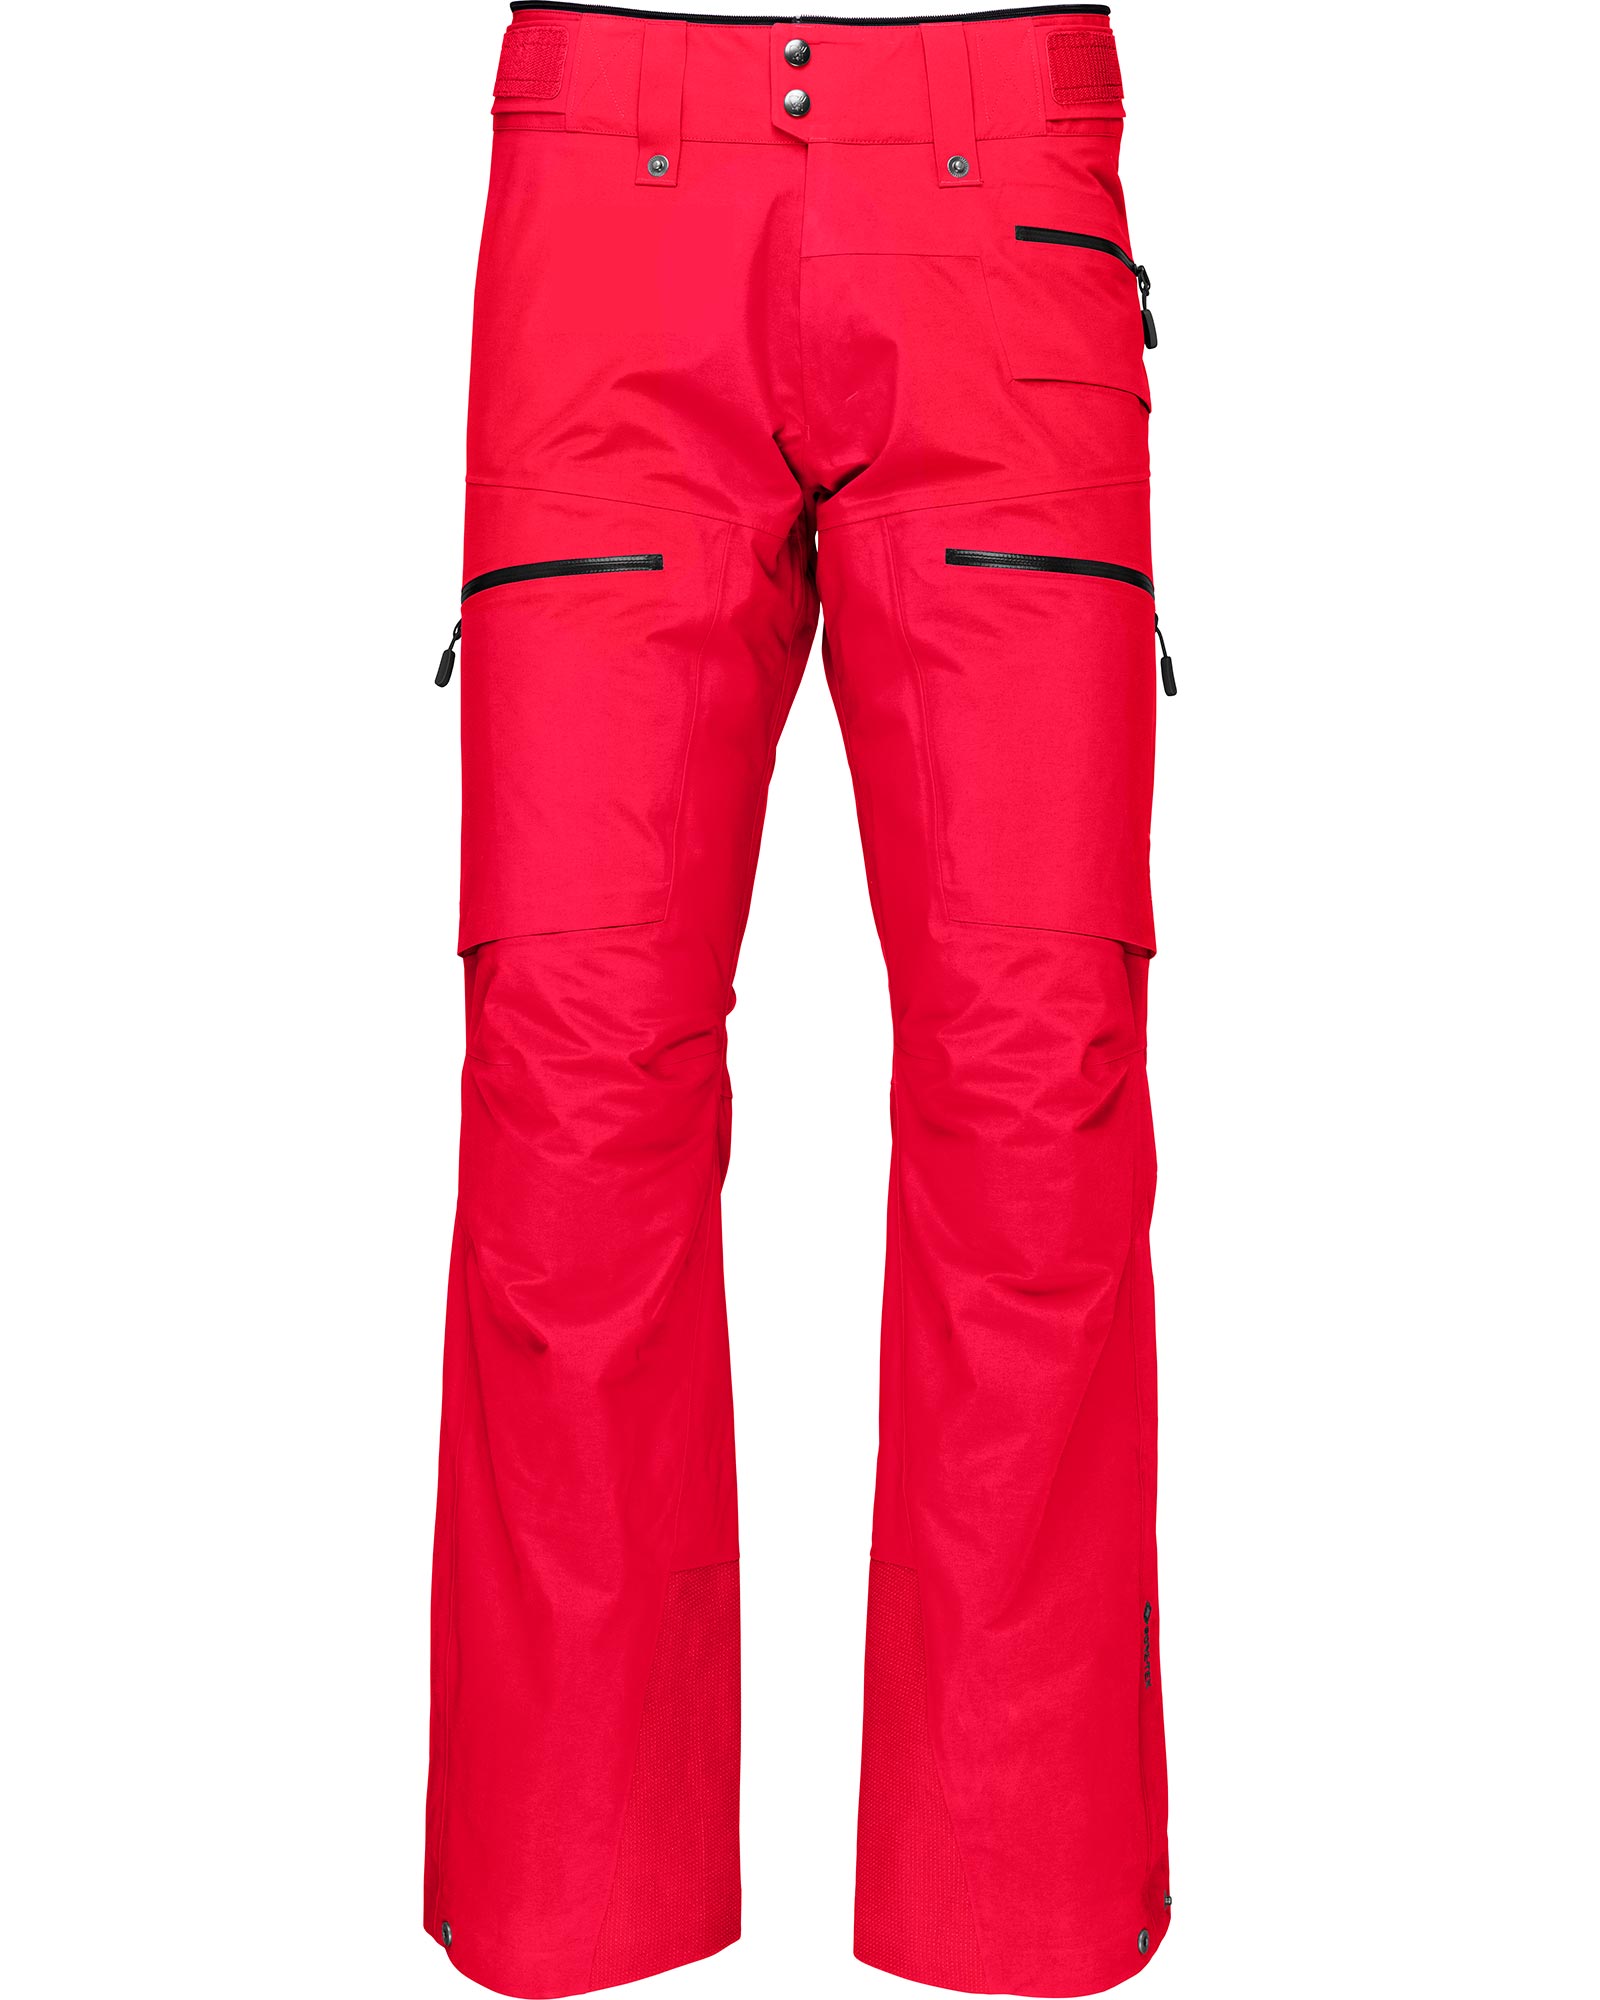 Norrona Lofoten GORE TEX 3L Men’s Pants - True Red XL